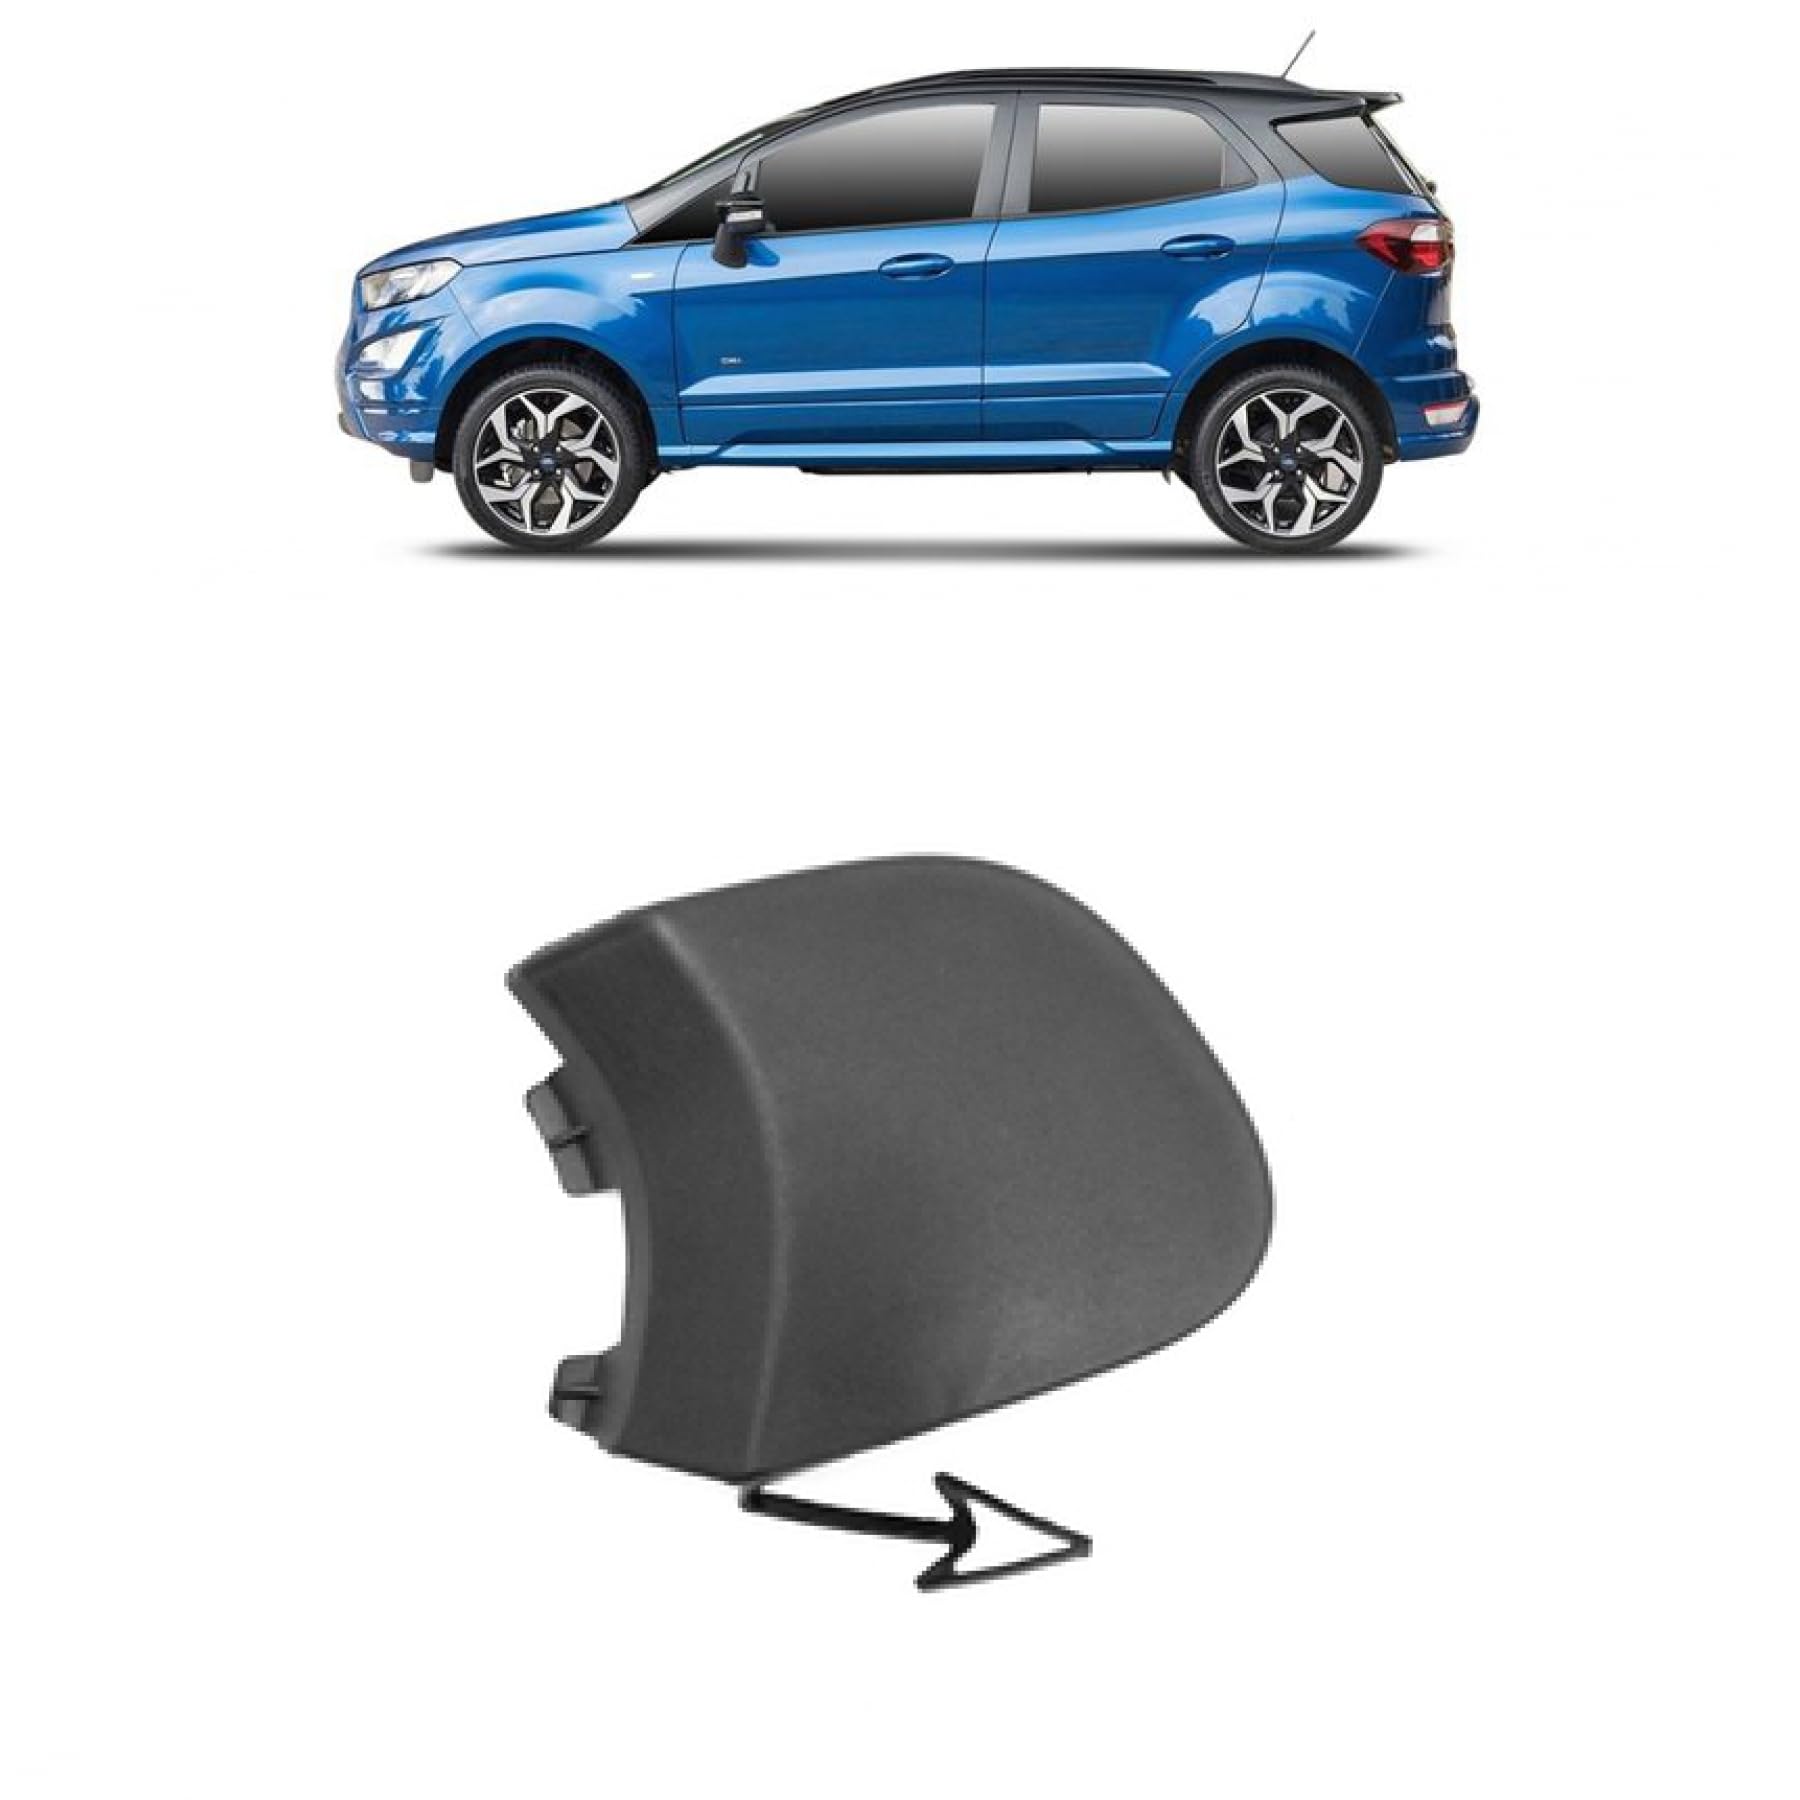 DM Autoteile Abschlepphaken Abdeckung Stoßstange vorne kompatibel für Ford ECOSPORT ab 18 von DM Autoteile